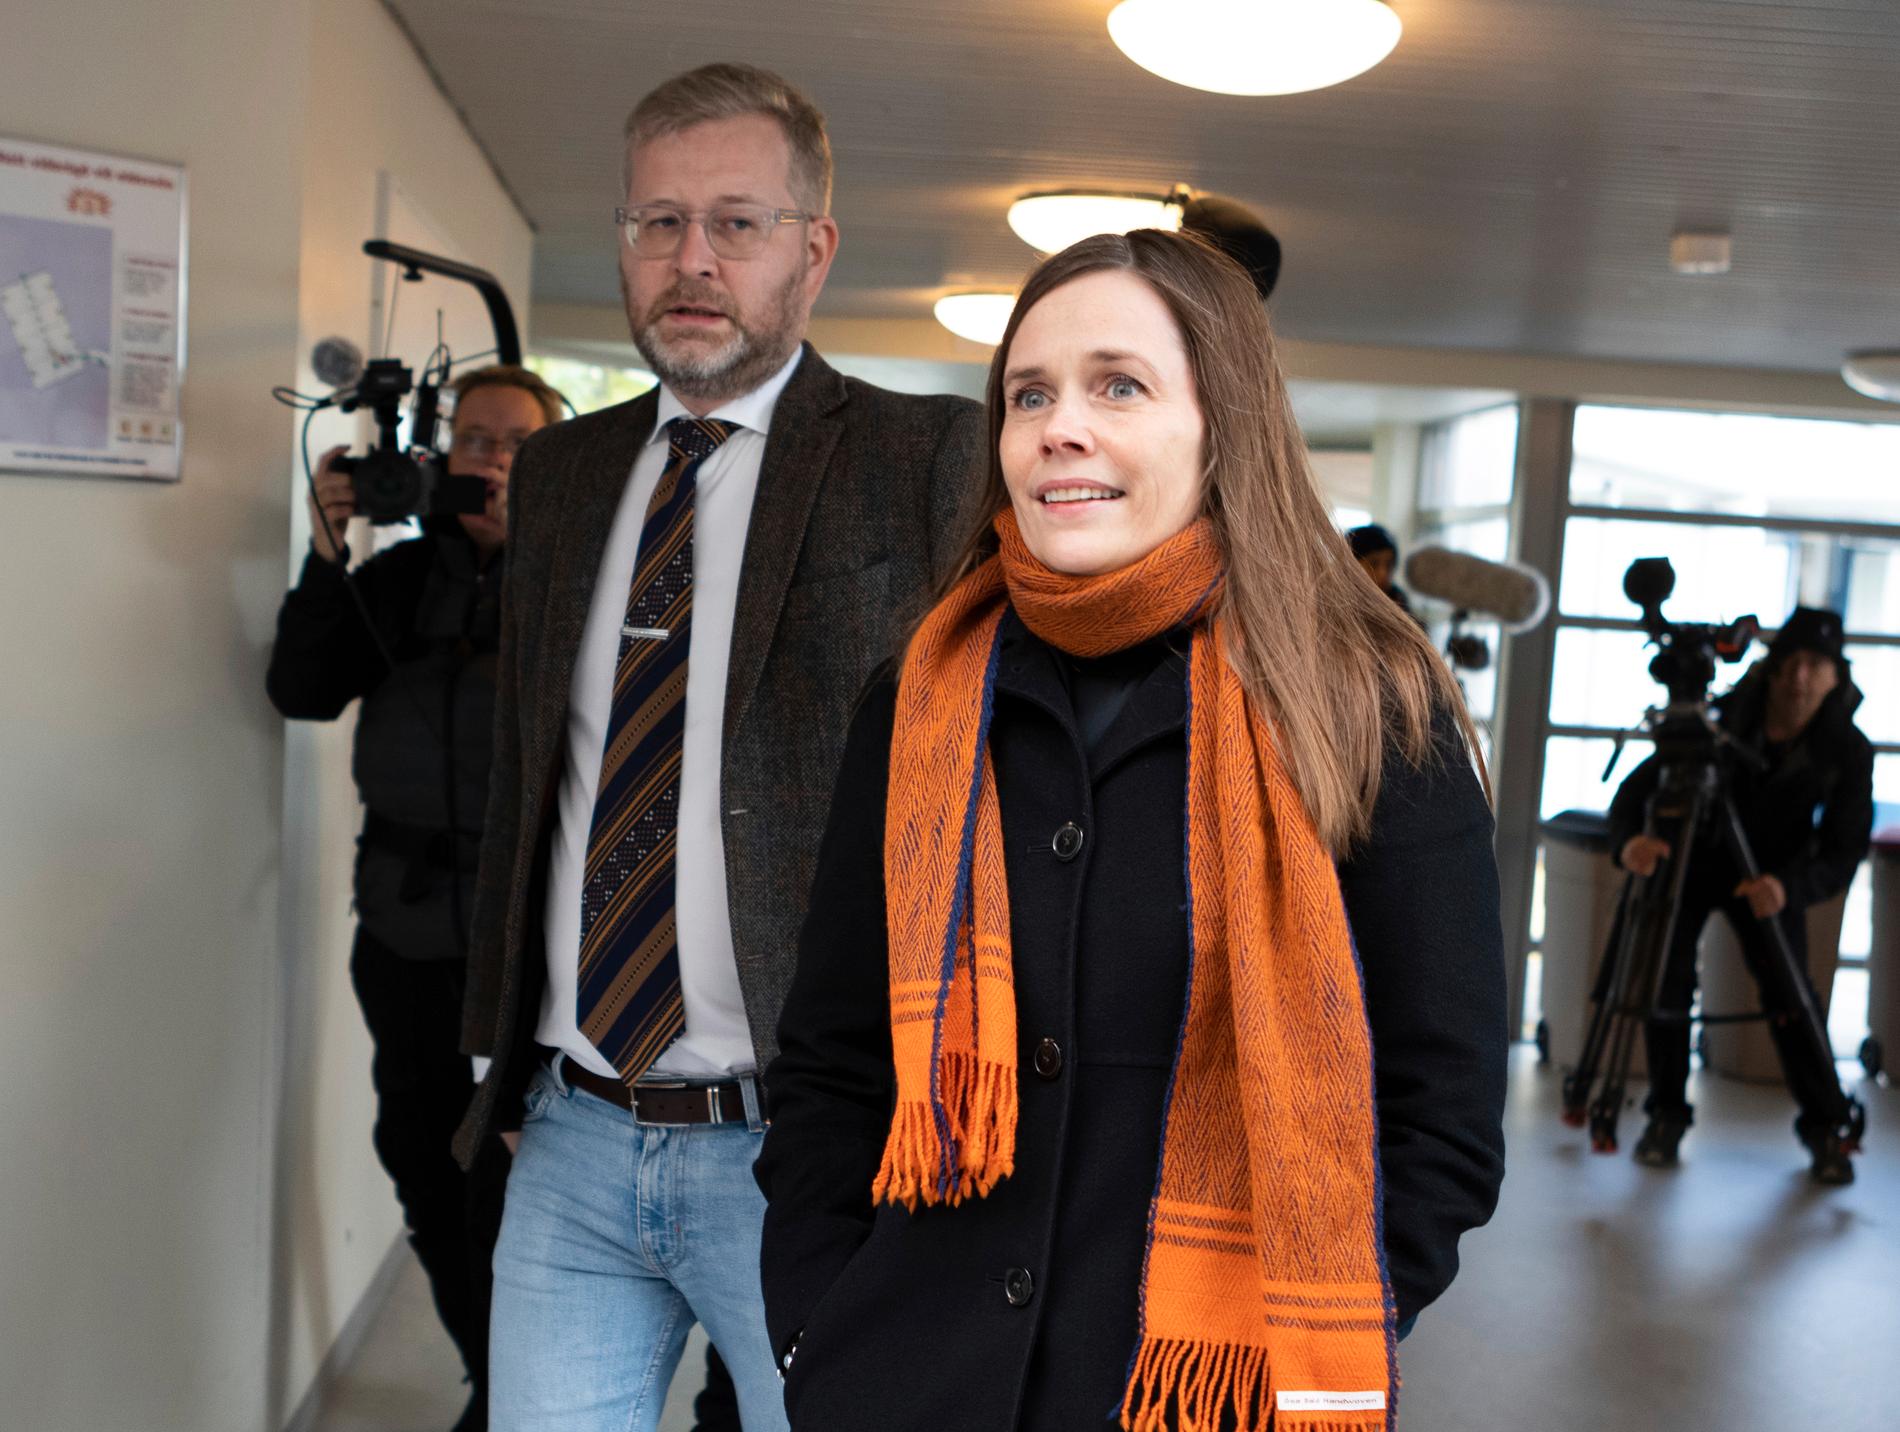 Islands statsminister Katrín Jakobsdóttir röstade tidigare under lördagen i Reykjavik.